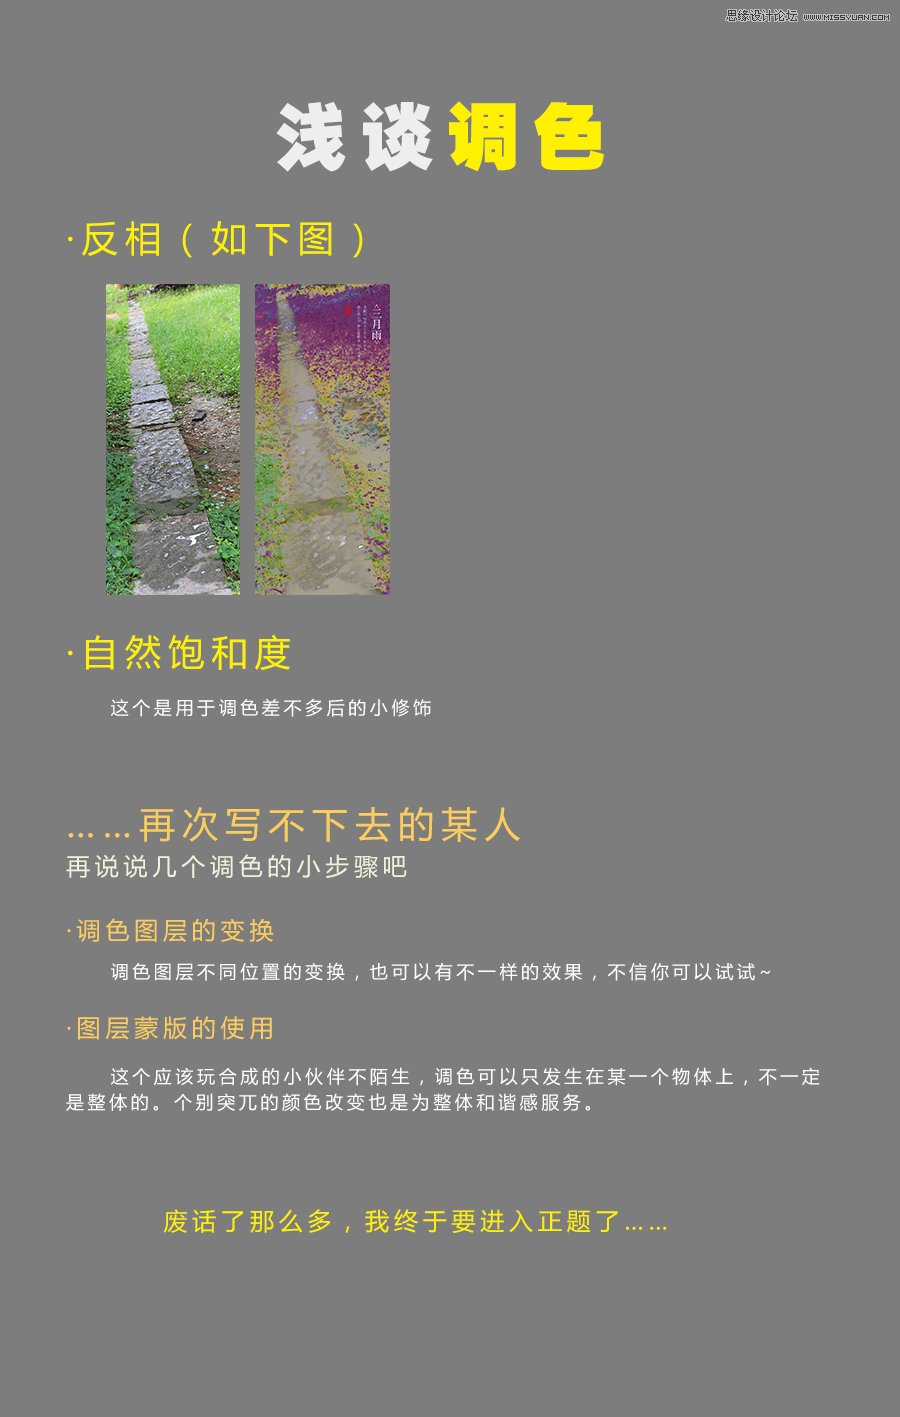 Photoshop调出中国风淡雅意境效果图,PS教程,图老师教程网